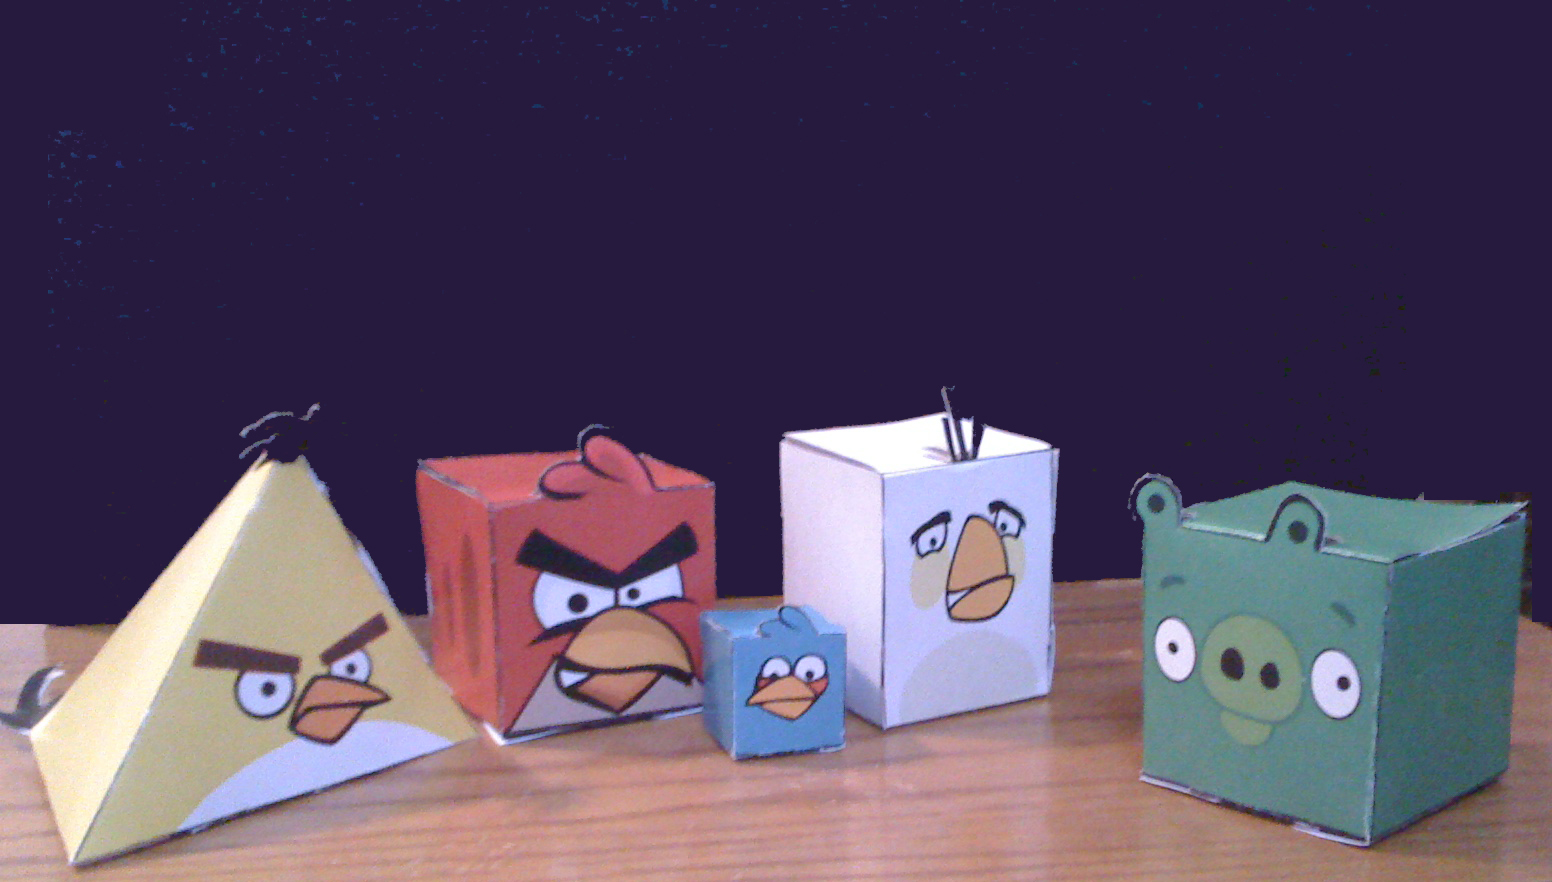 Angry Birds Papercraft - Bikin Angry Birds dari kertas &#91;gampang&#93;